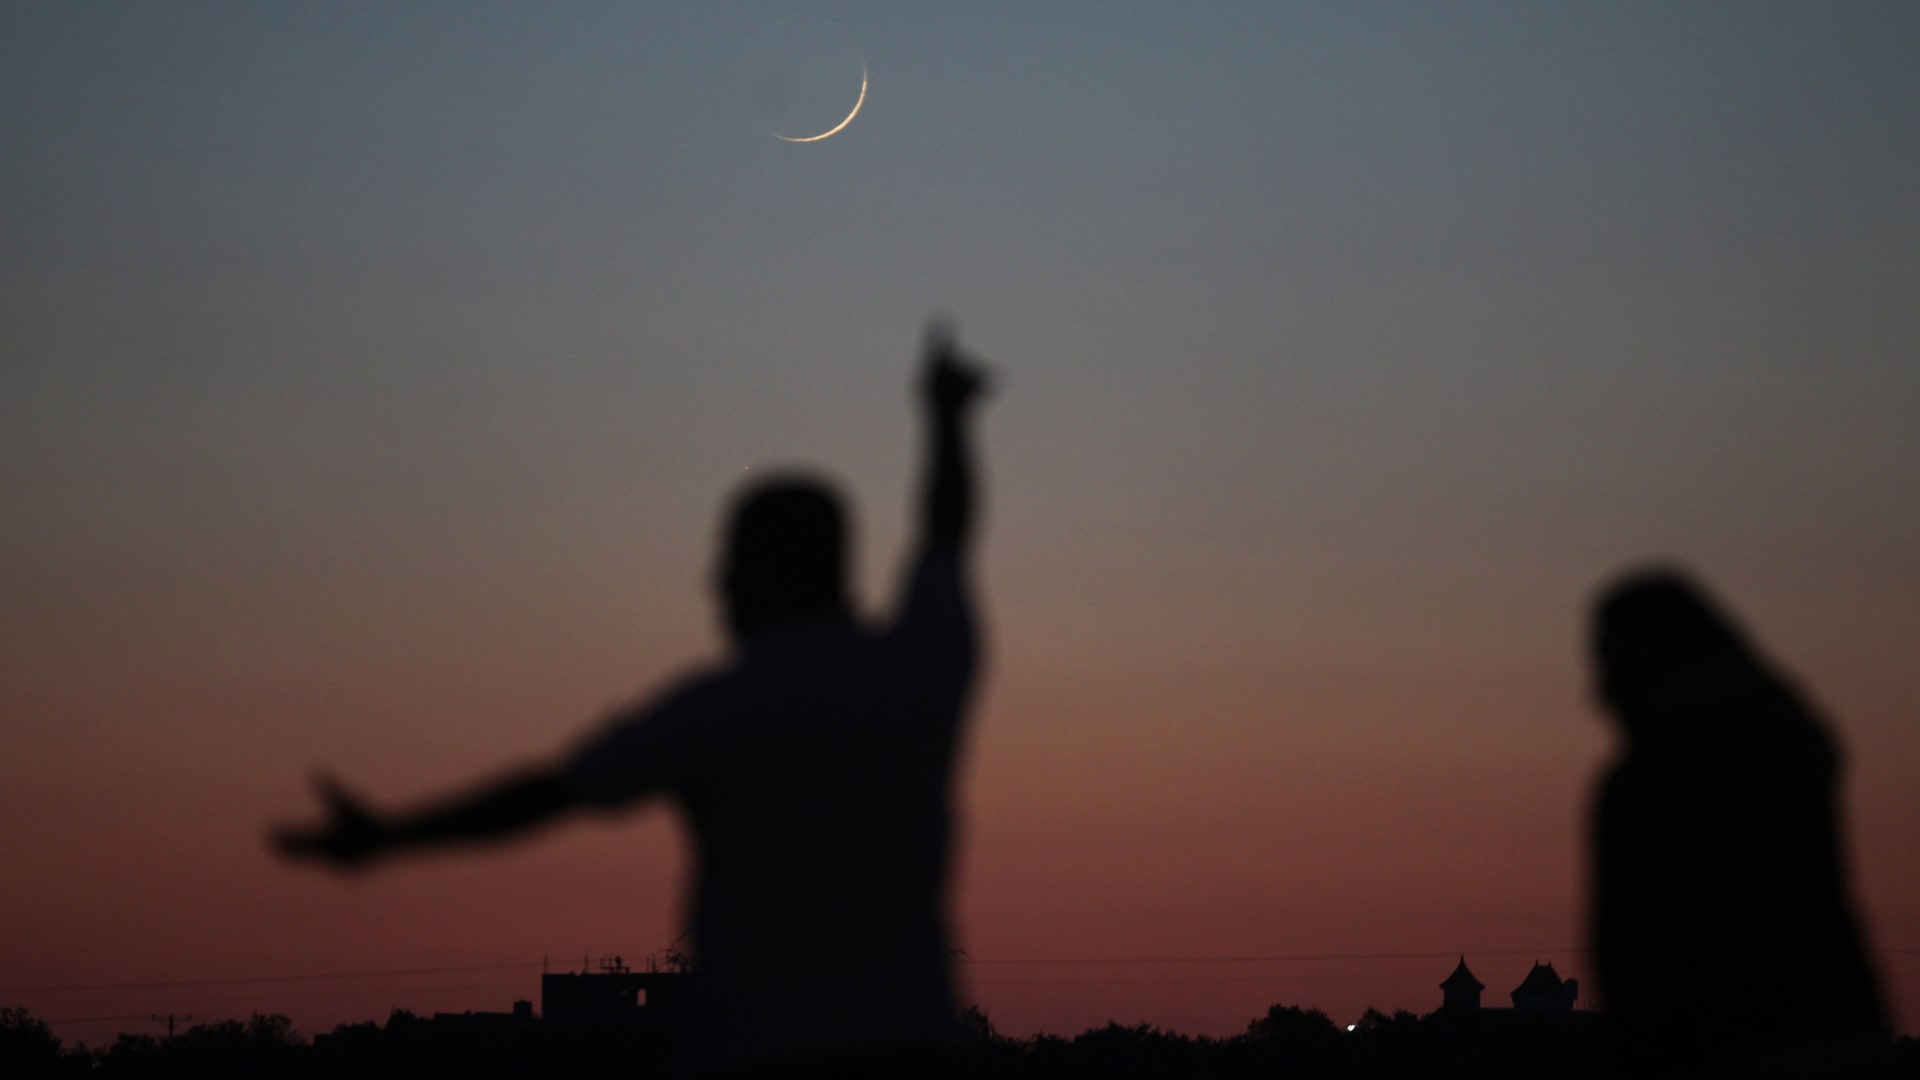 مرصد فلسطين الفلكي: الخميس غرة رمضان في معظم دول العالم الإسلامي